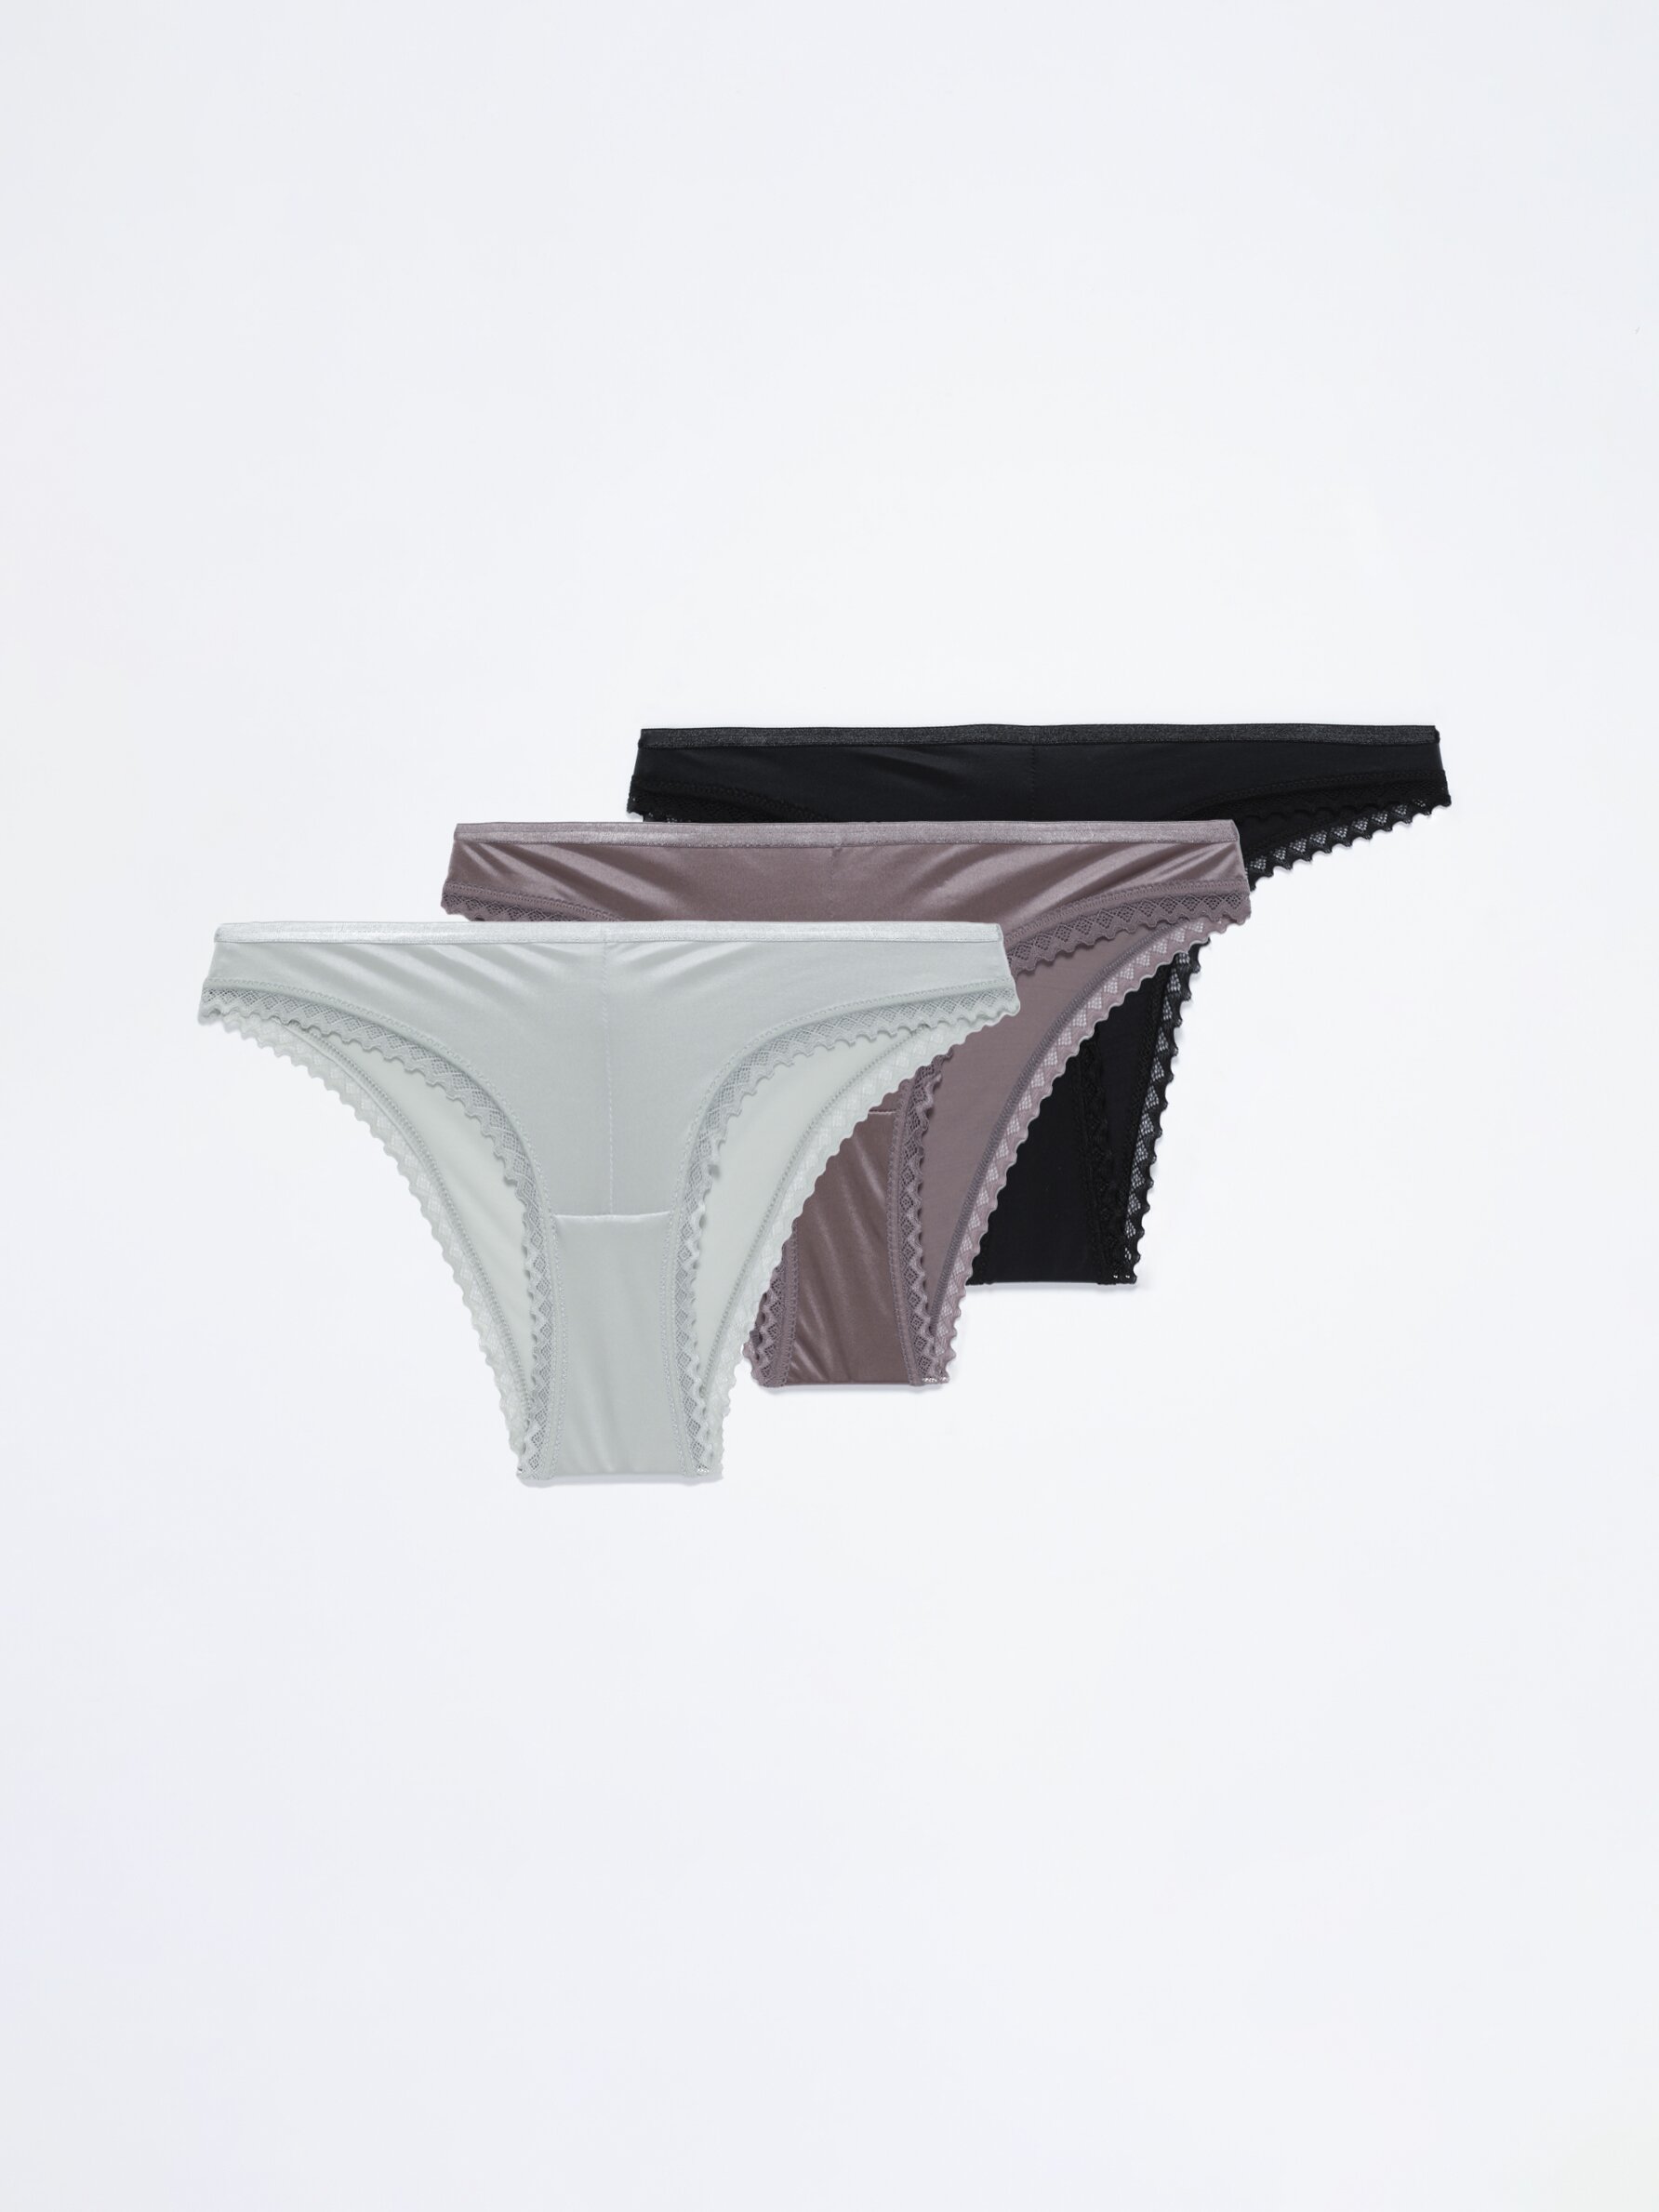 Satin Underwear Suit, Satin Underpants Set, Satin Lingerie